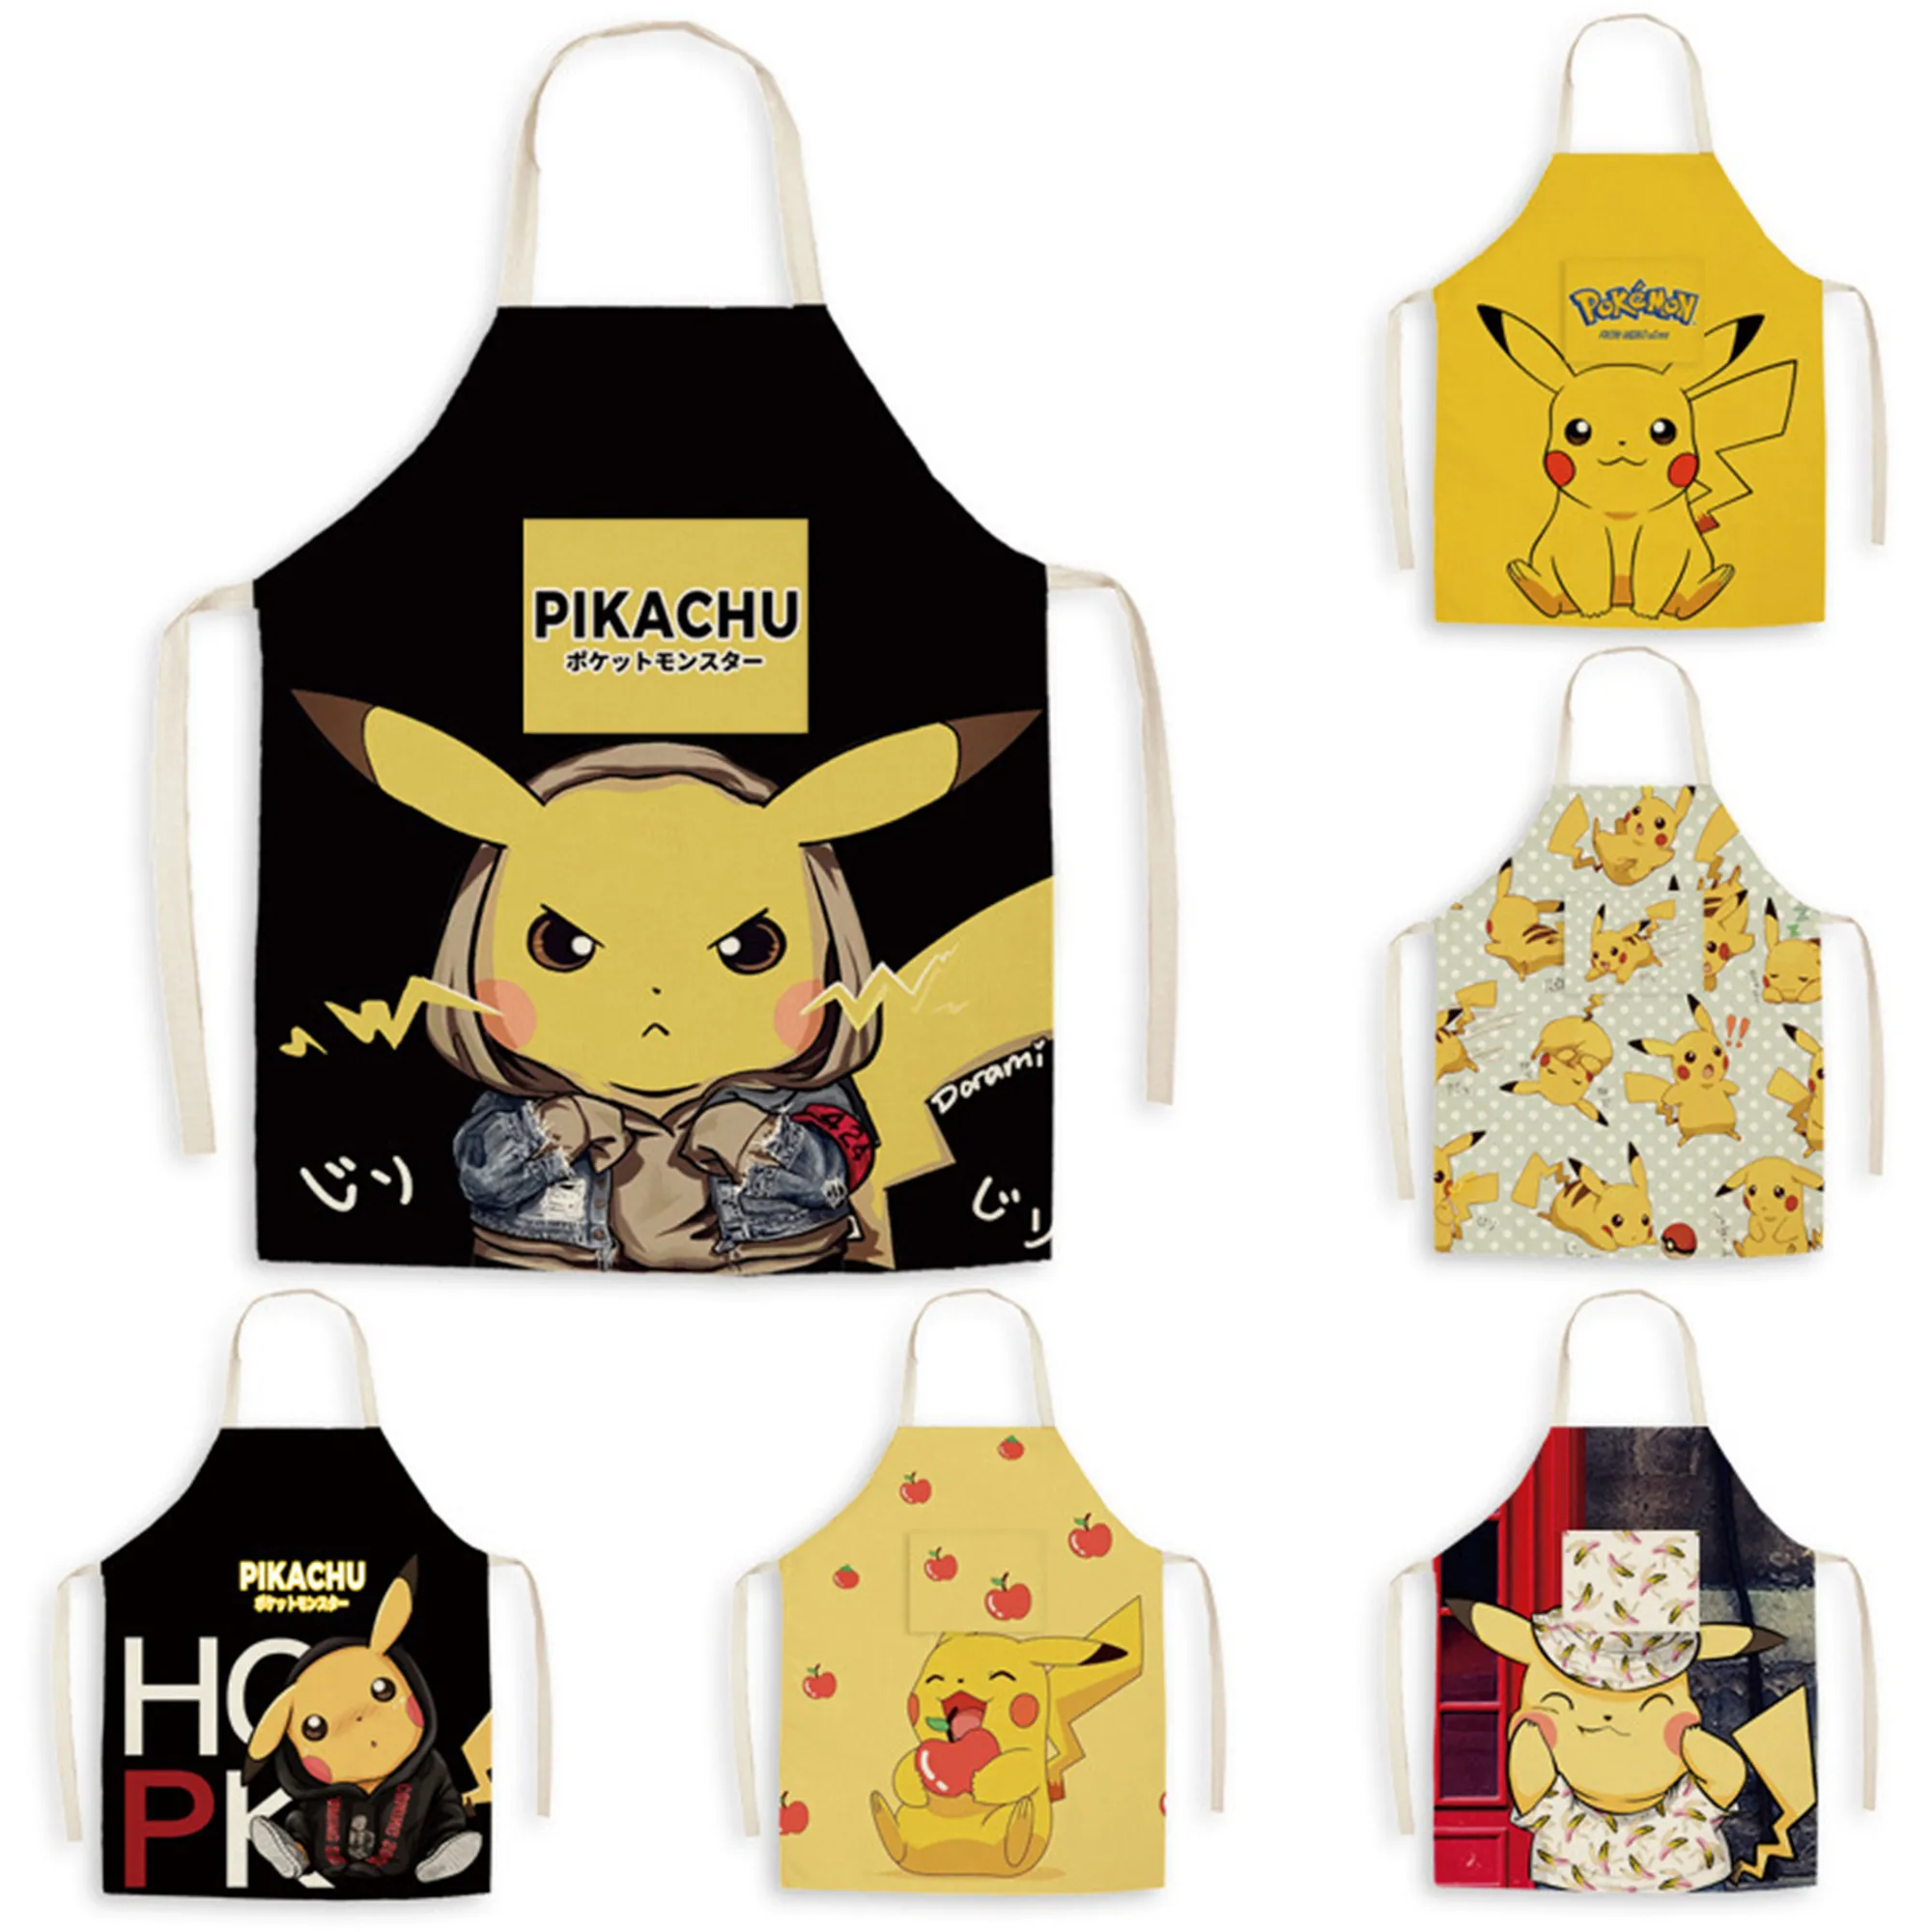 Details about   Monpoke Gift Set Apron Suit & Hat pikachu 